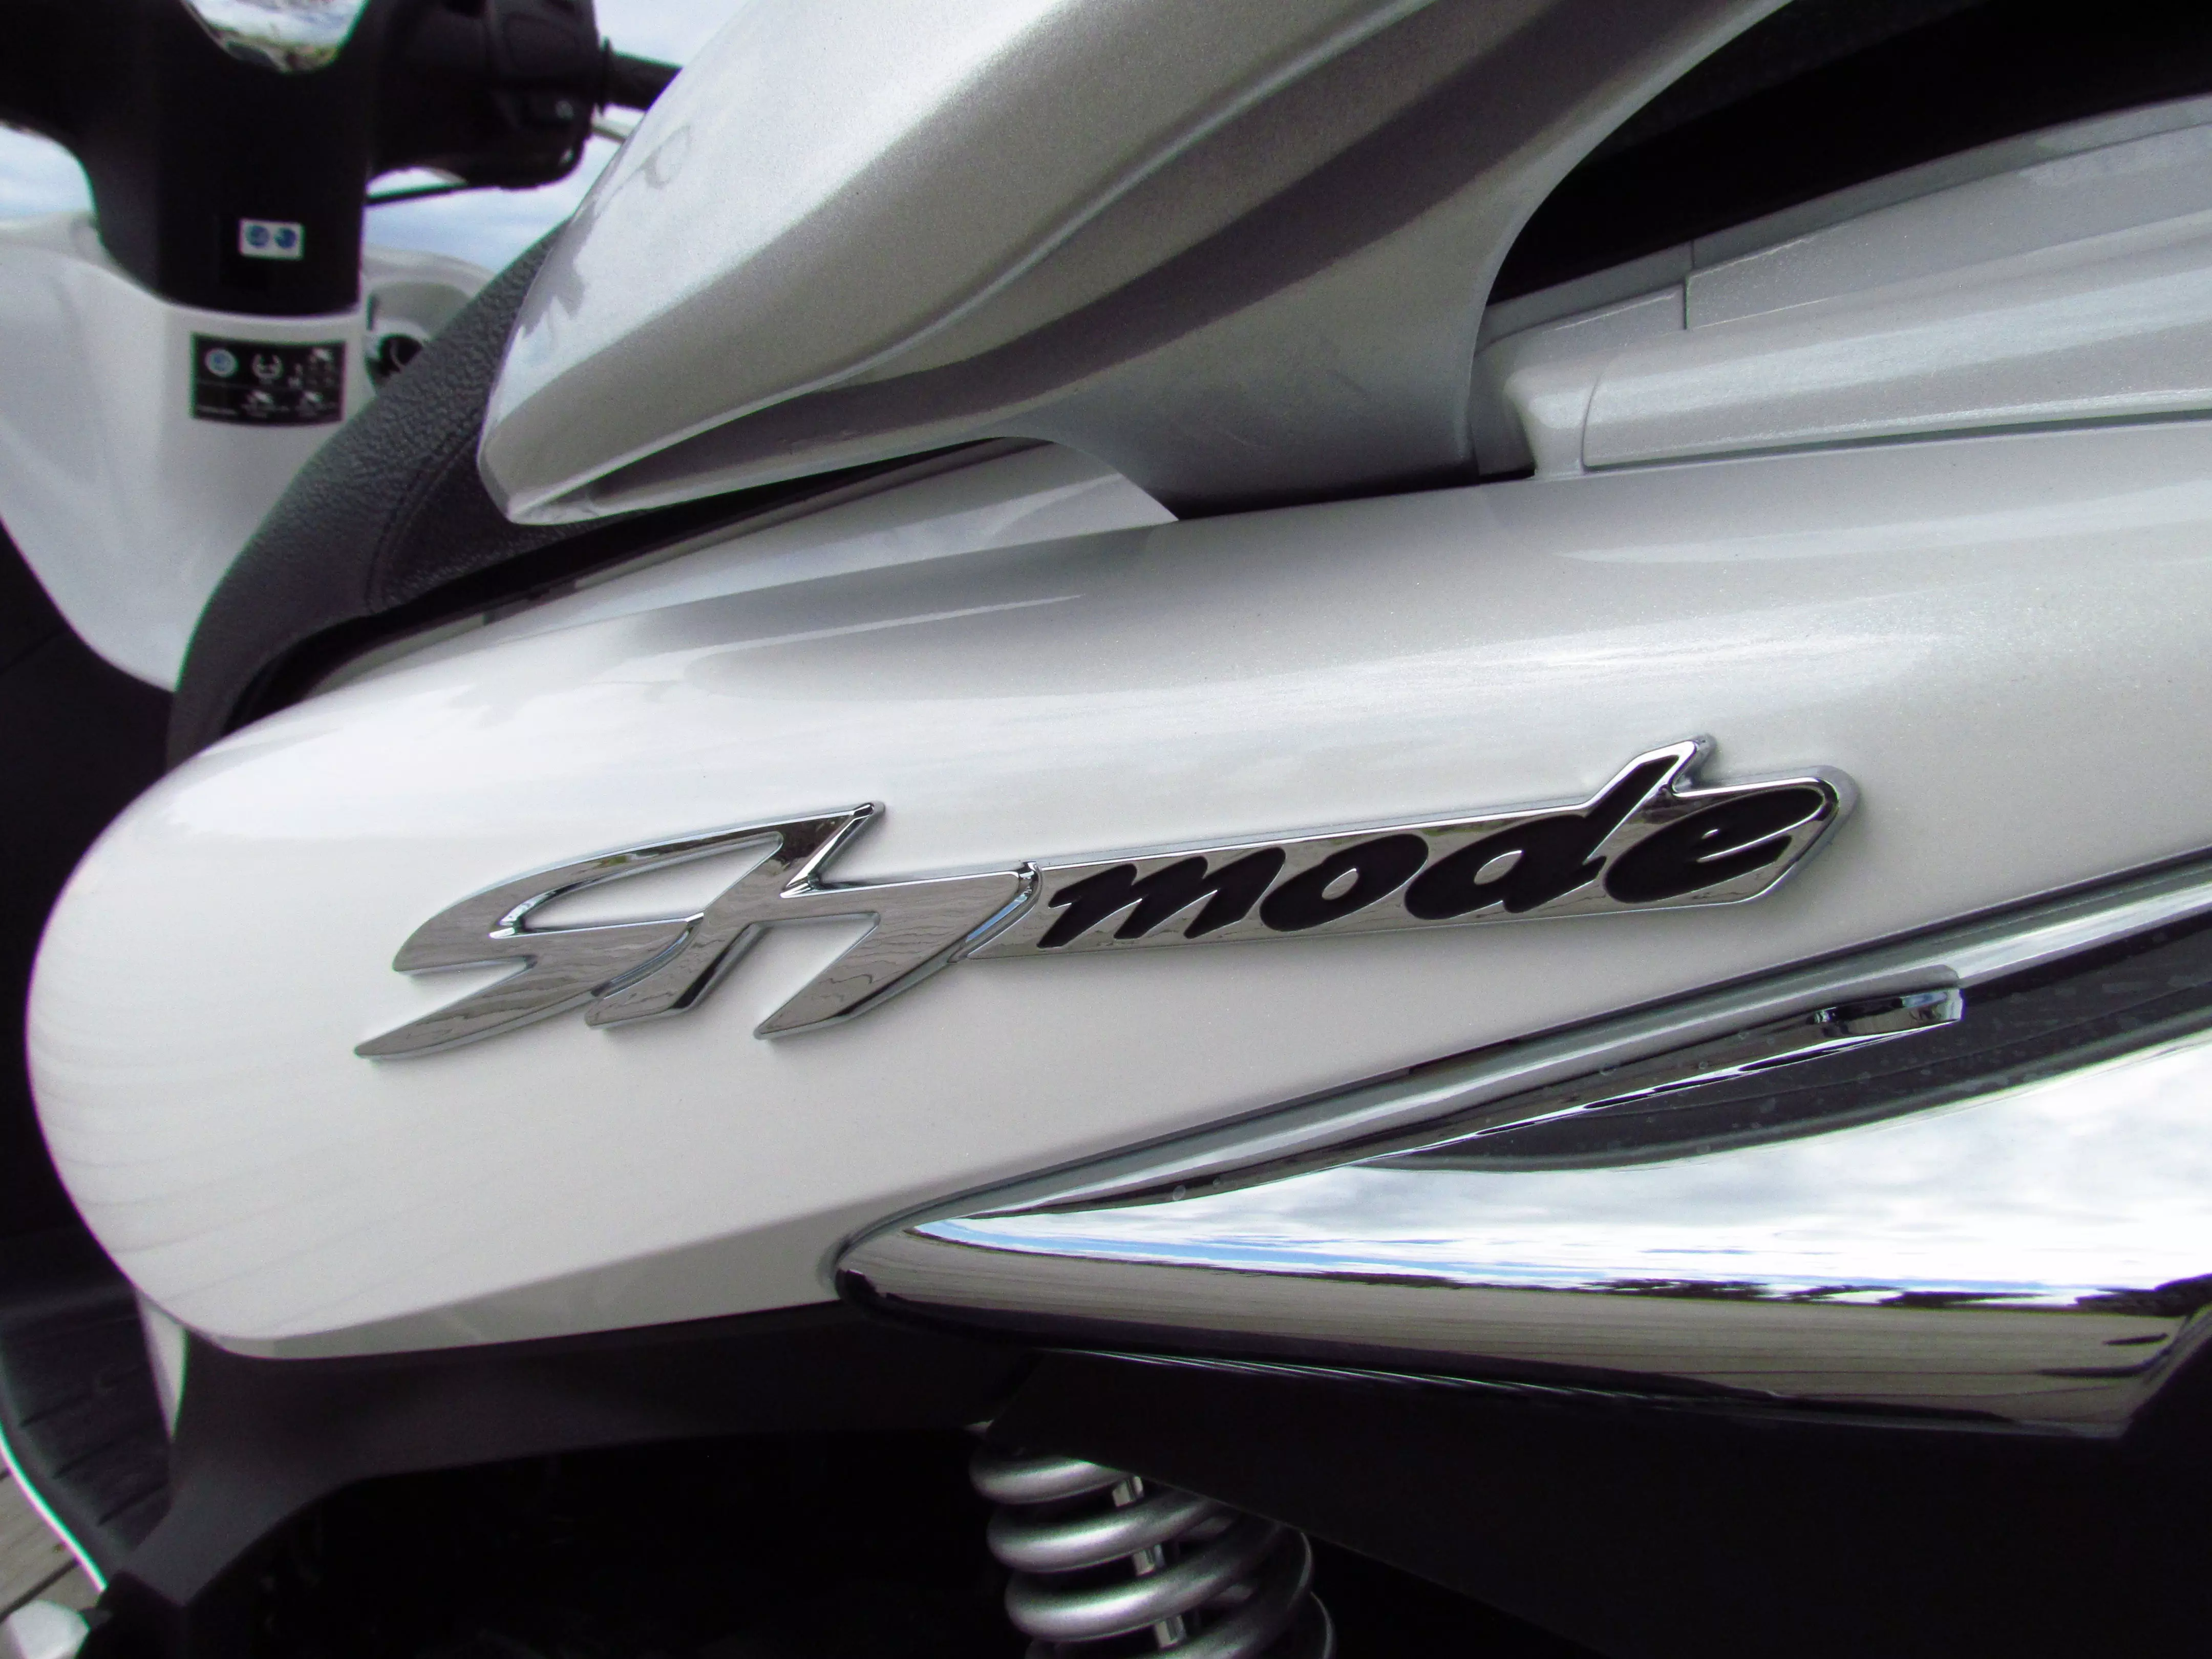 הונדה SH Mode החדש עם מנוע 125 סמ"ק במבחן